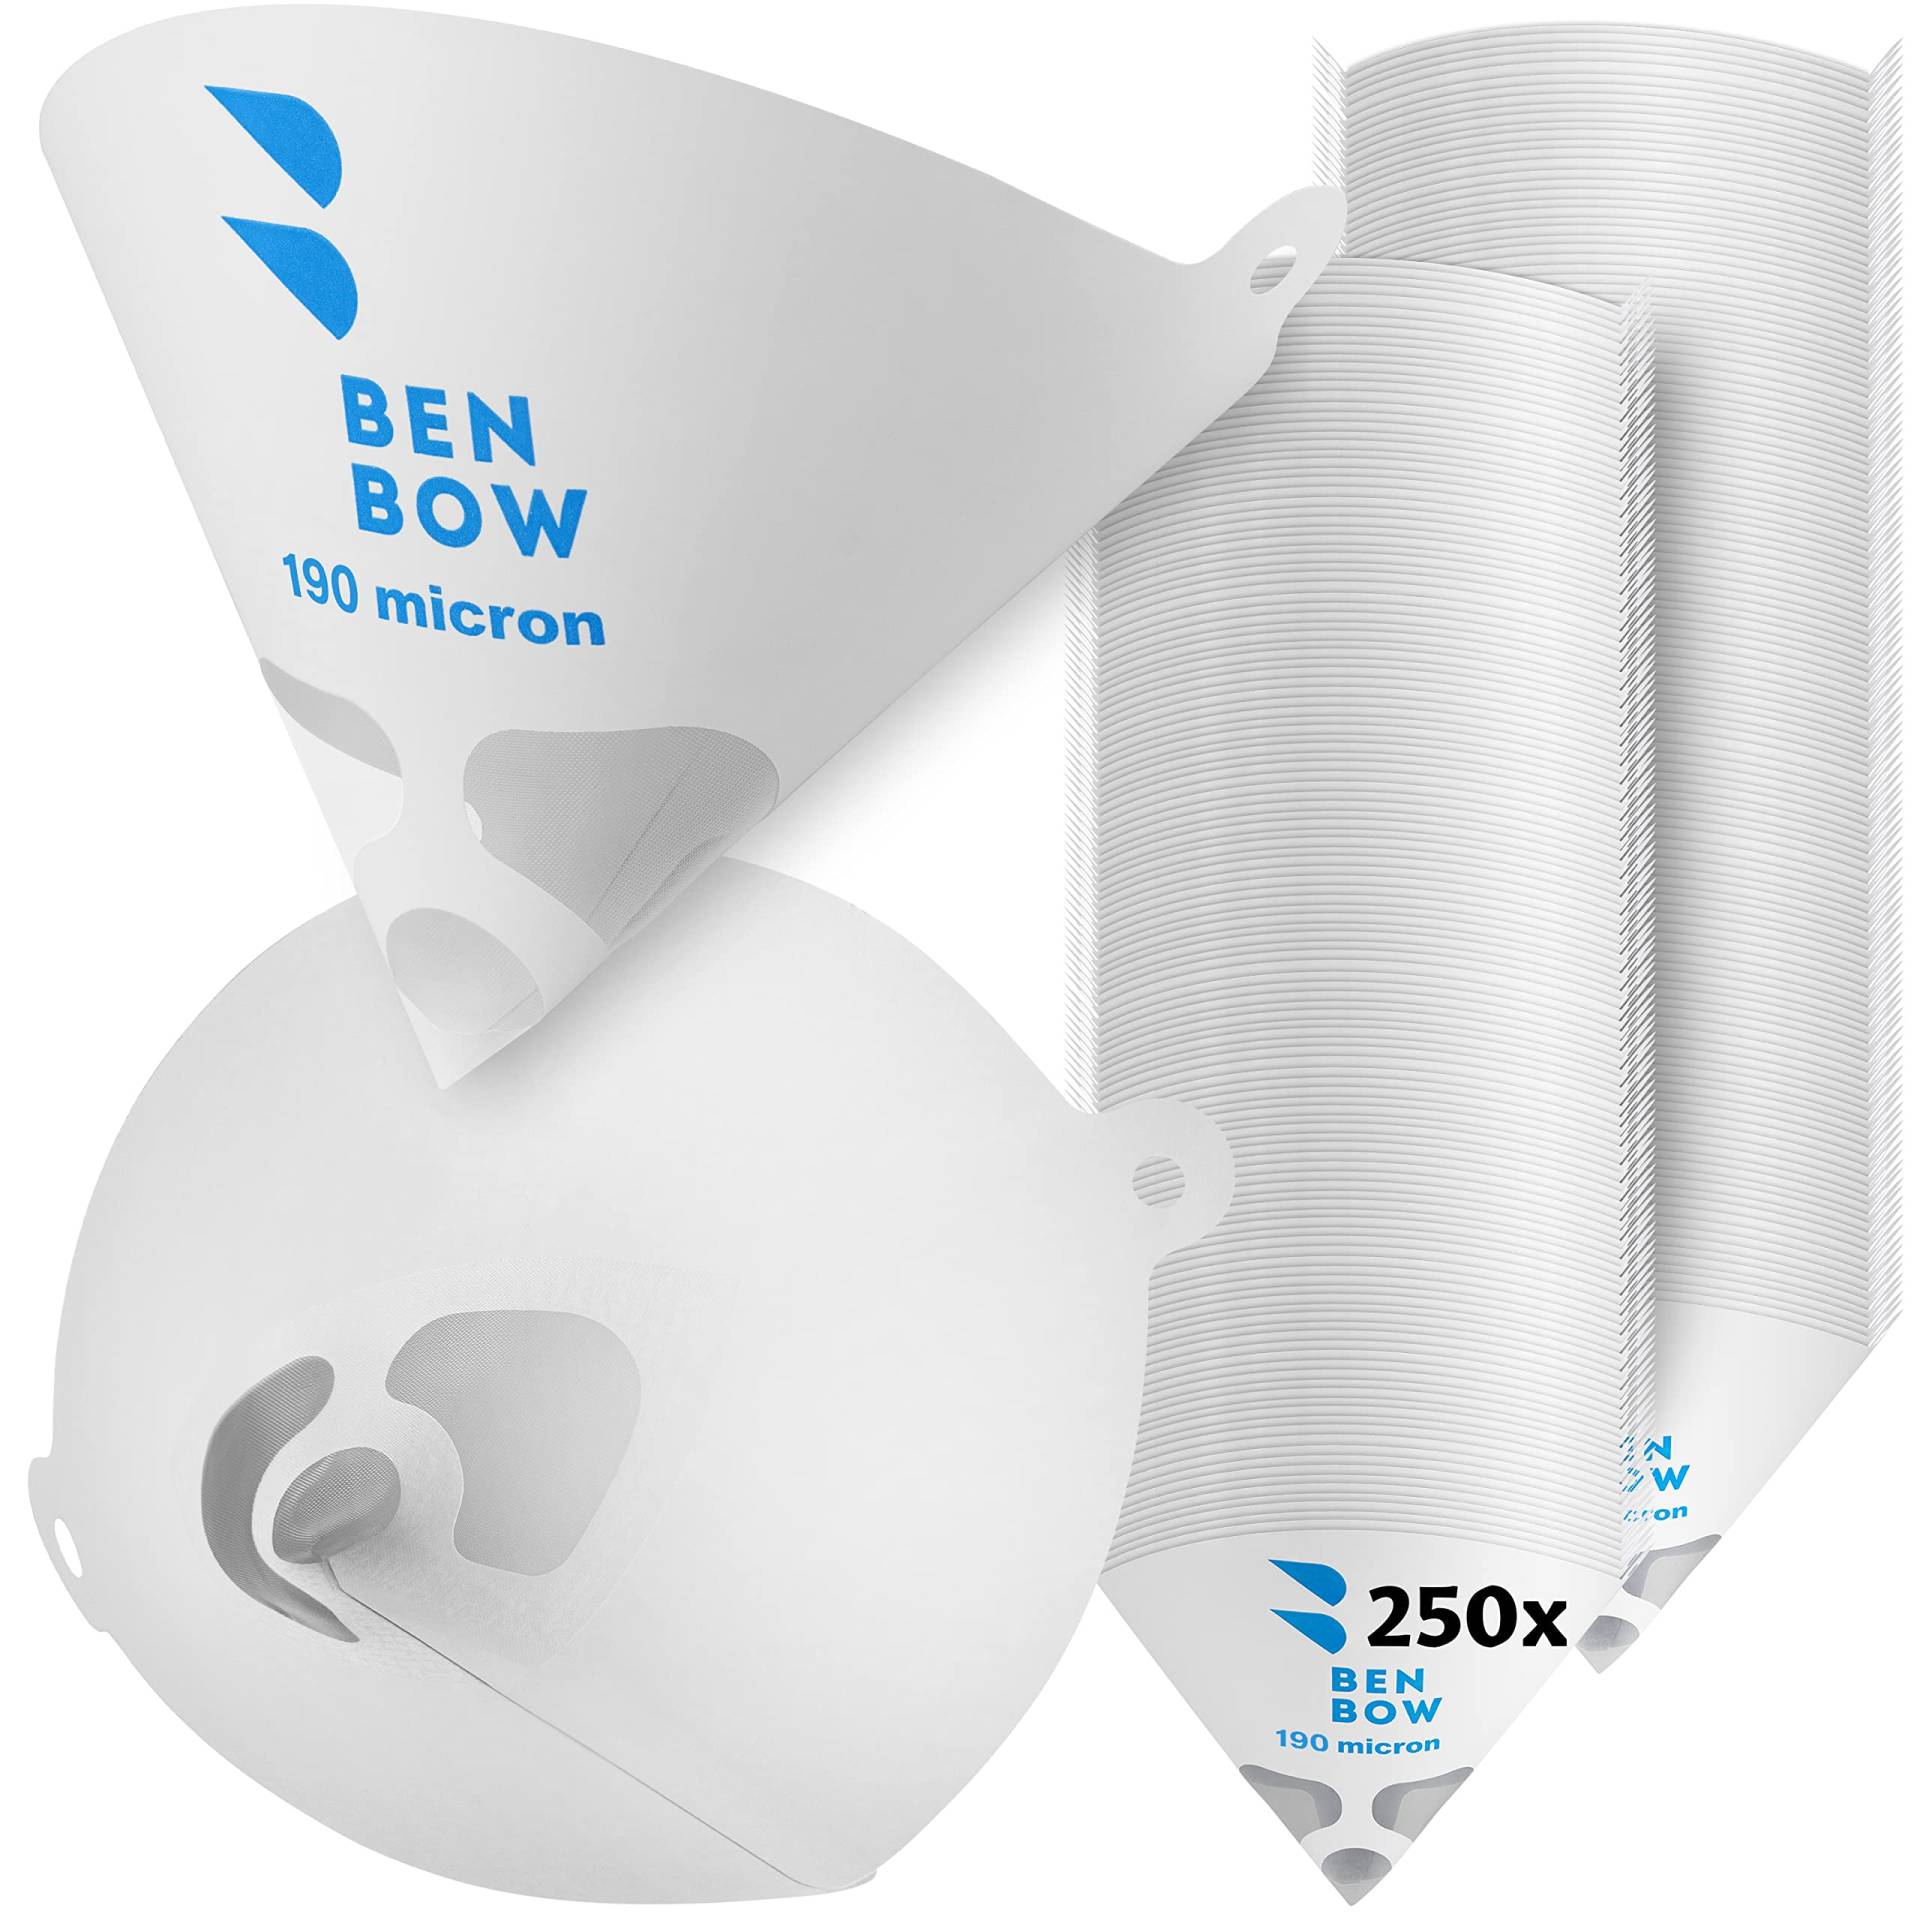 BenBow Lacksieb 190µ x 250 Stück - Einweg-Papierfilter mit Nylongewebe - zum Filtern von Lacken und Farben vor Verunreinigungen von BenBow